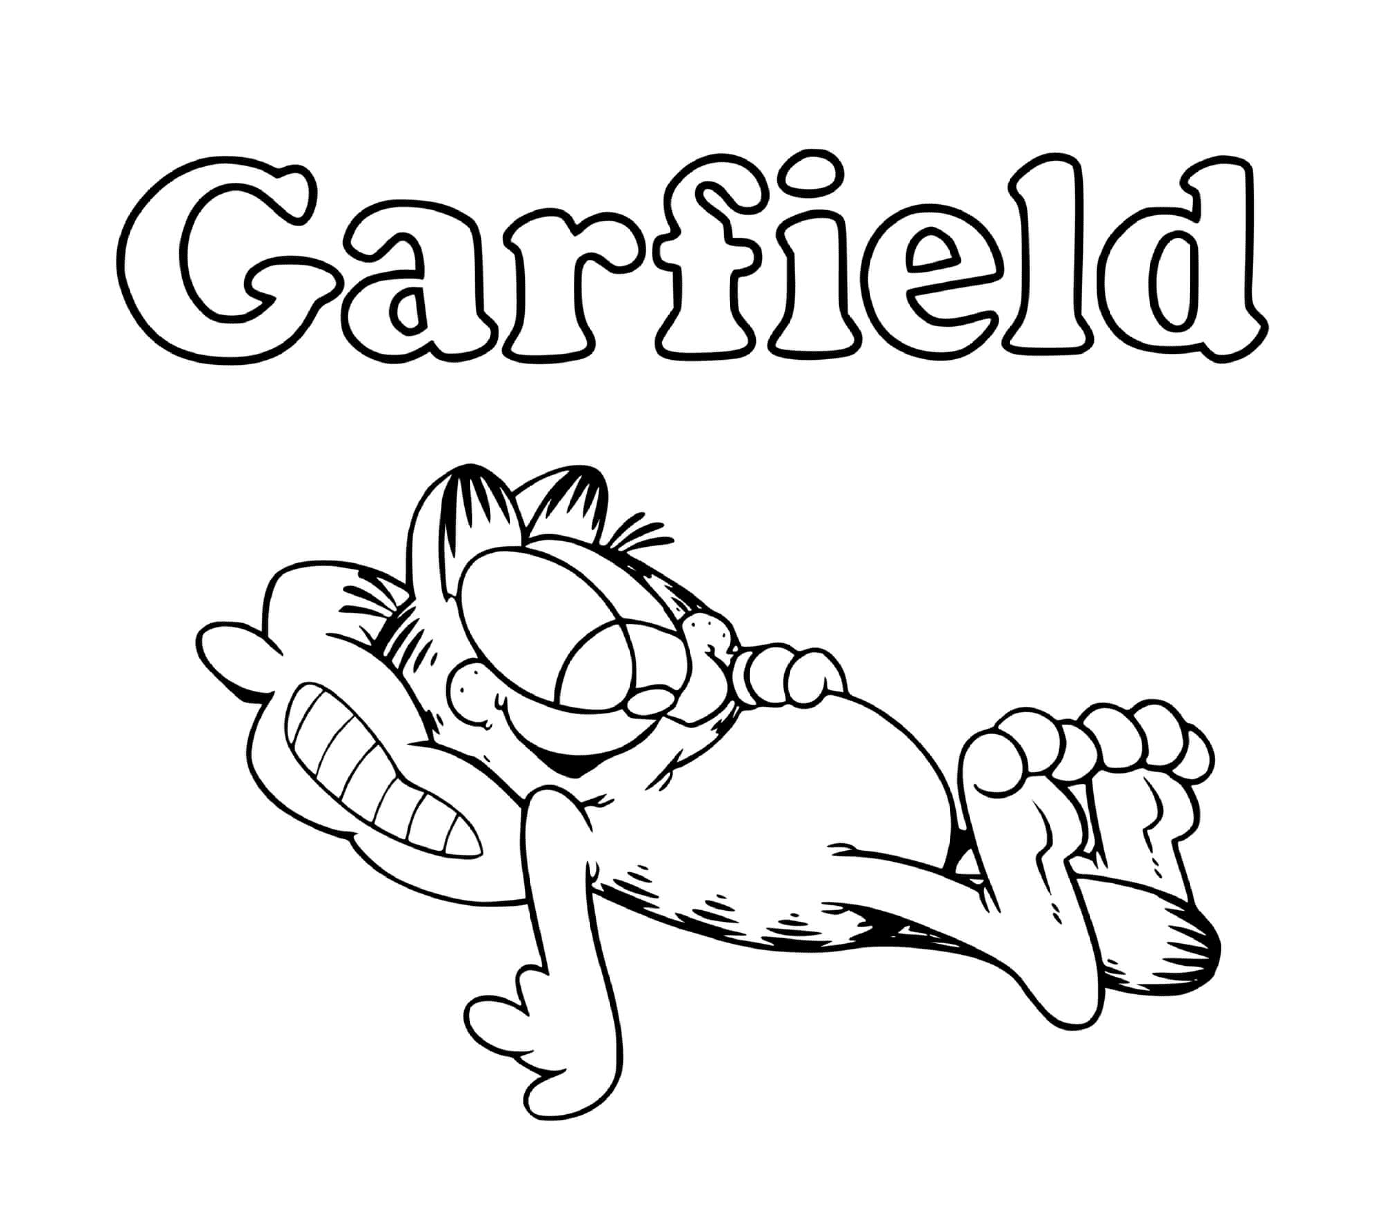  Garfield likes to eat and sleep 